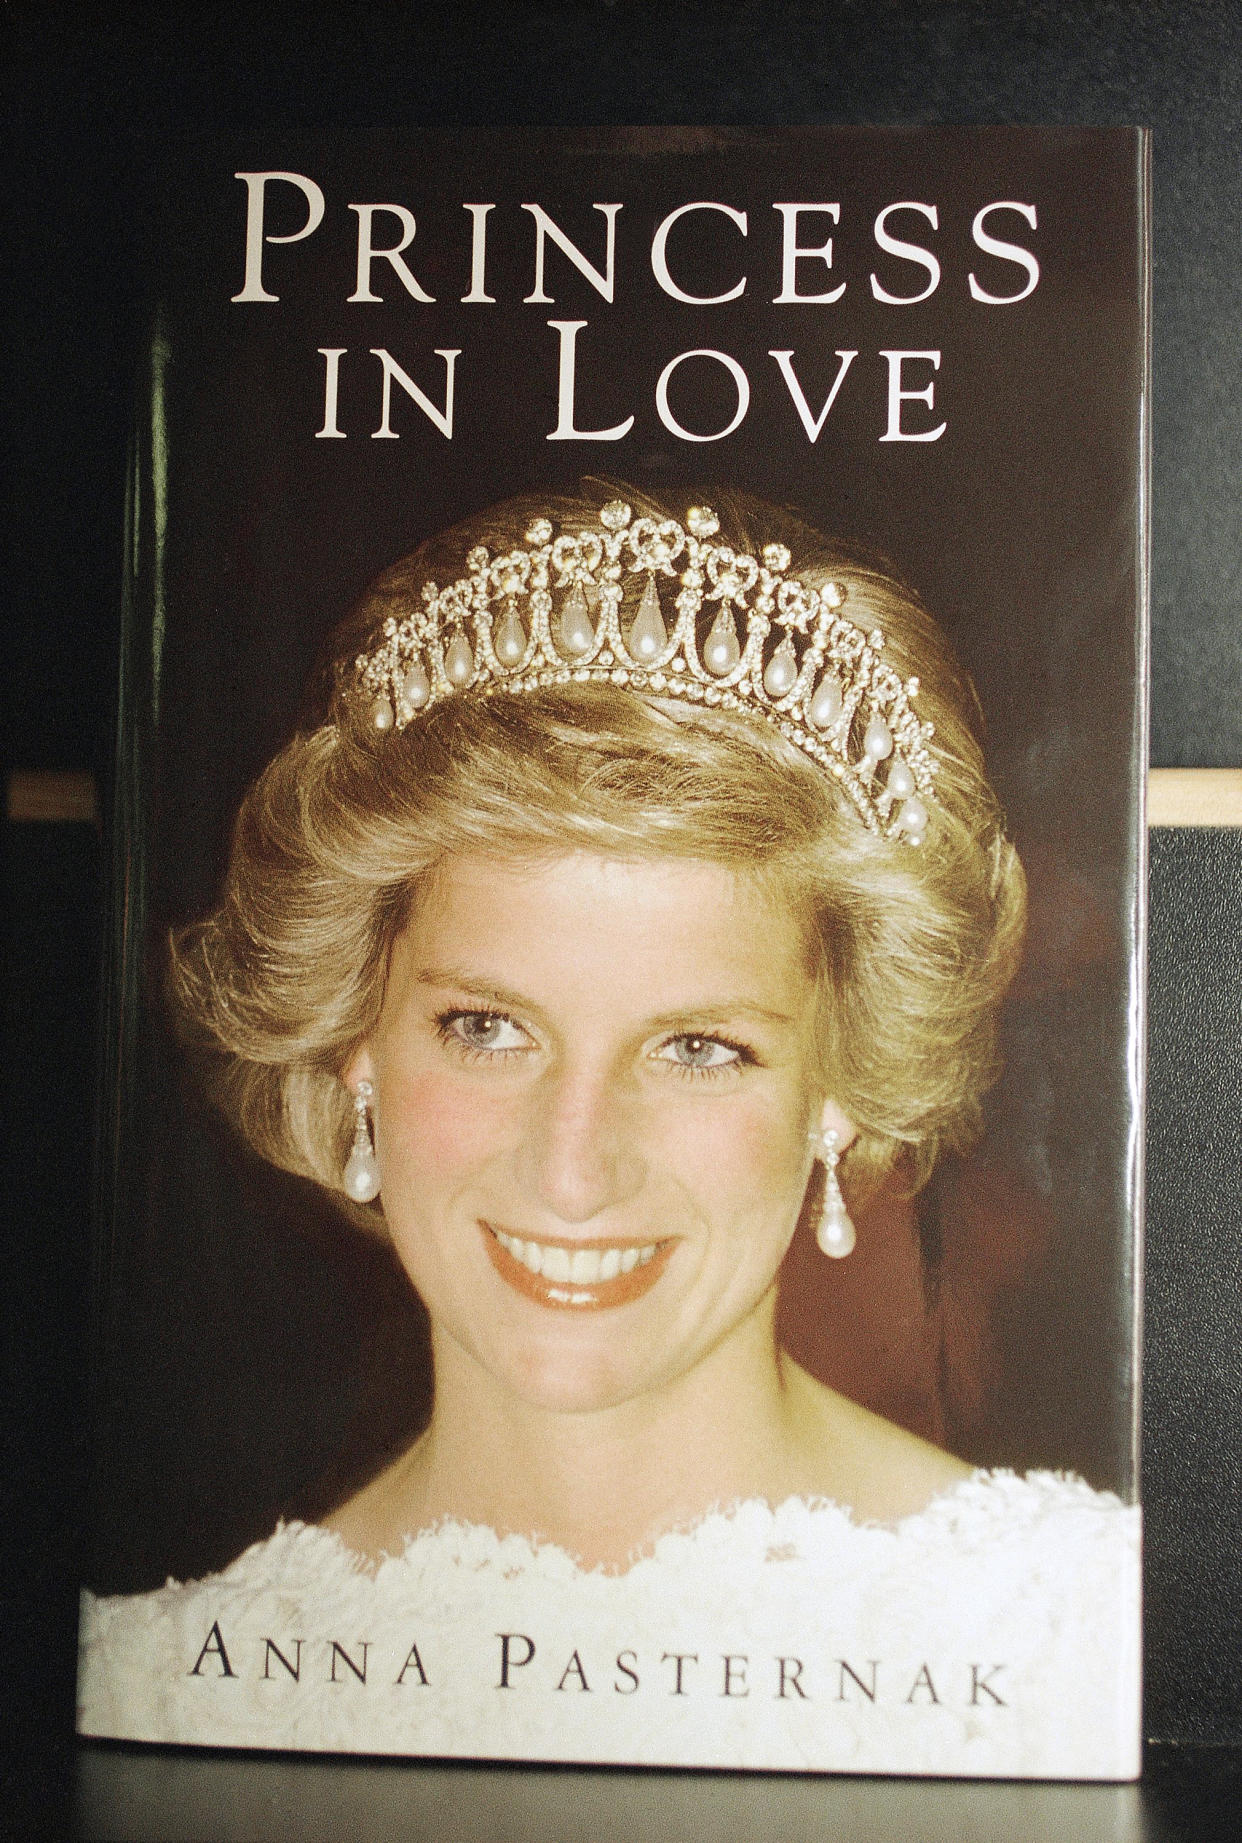 La portada del libro “Princess in Love” de Anna Pasternak, que cuenta la historia de James Hewitt, quien asegura haber sido el amante de Diana por varios años. (AP Photo/Alistair Grant)